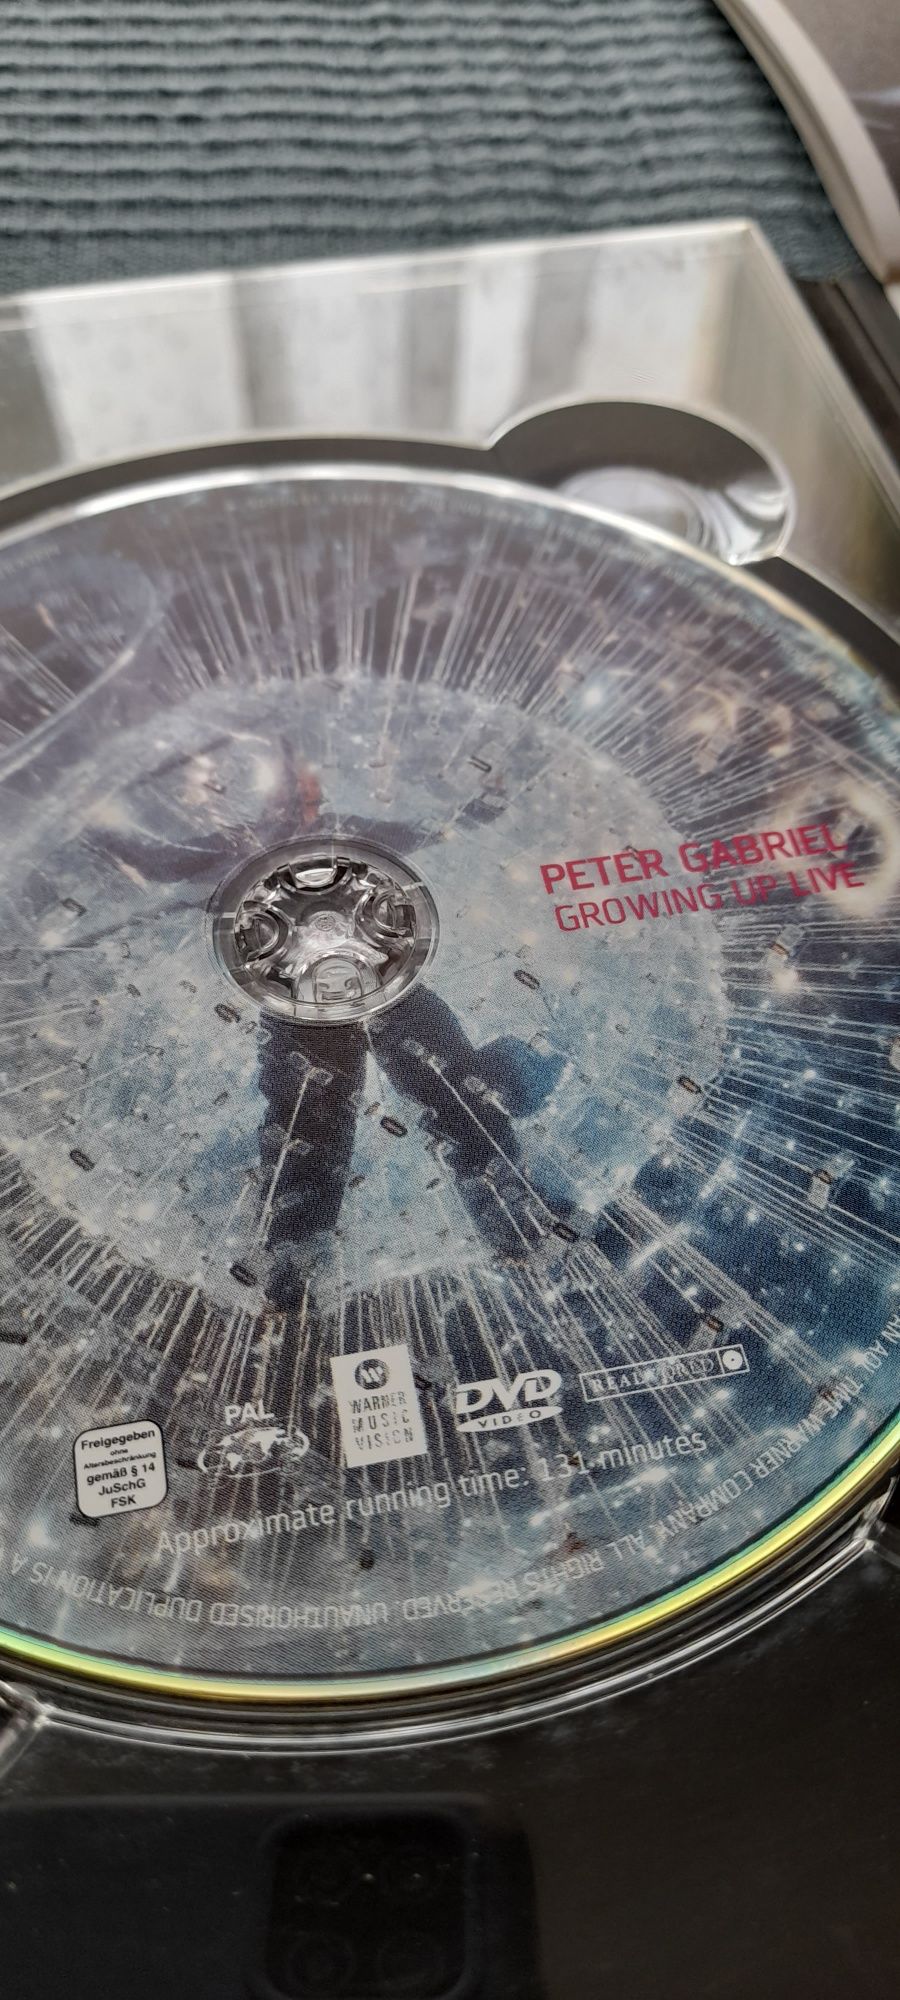 Peter Gabriel - Growing up live - dvd 2003